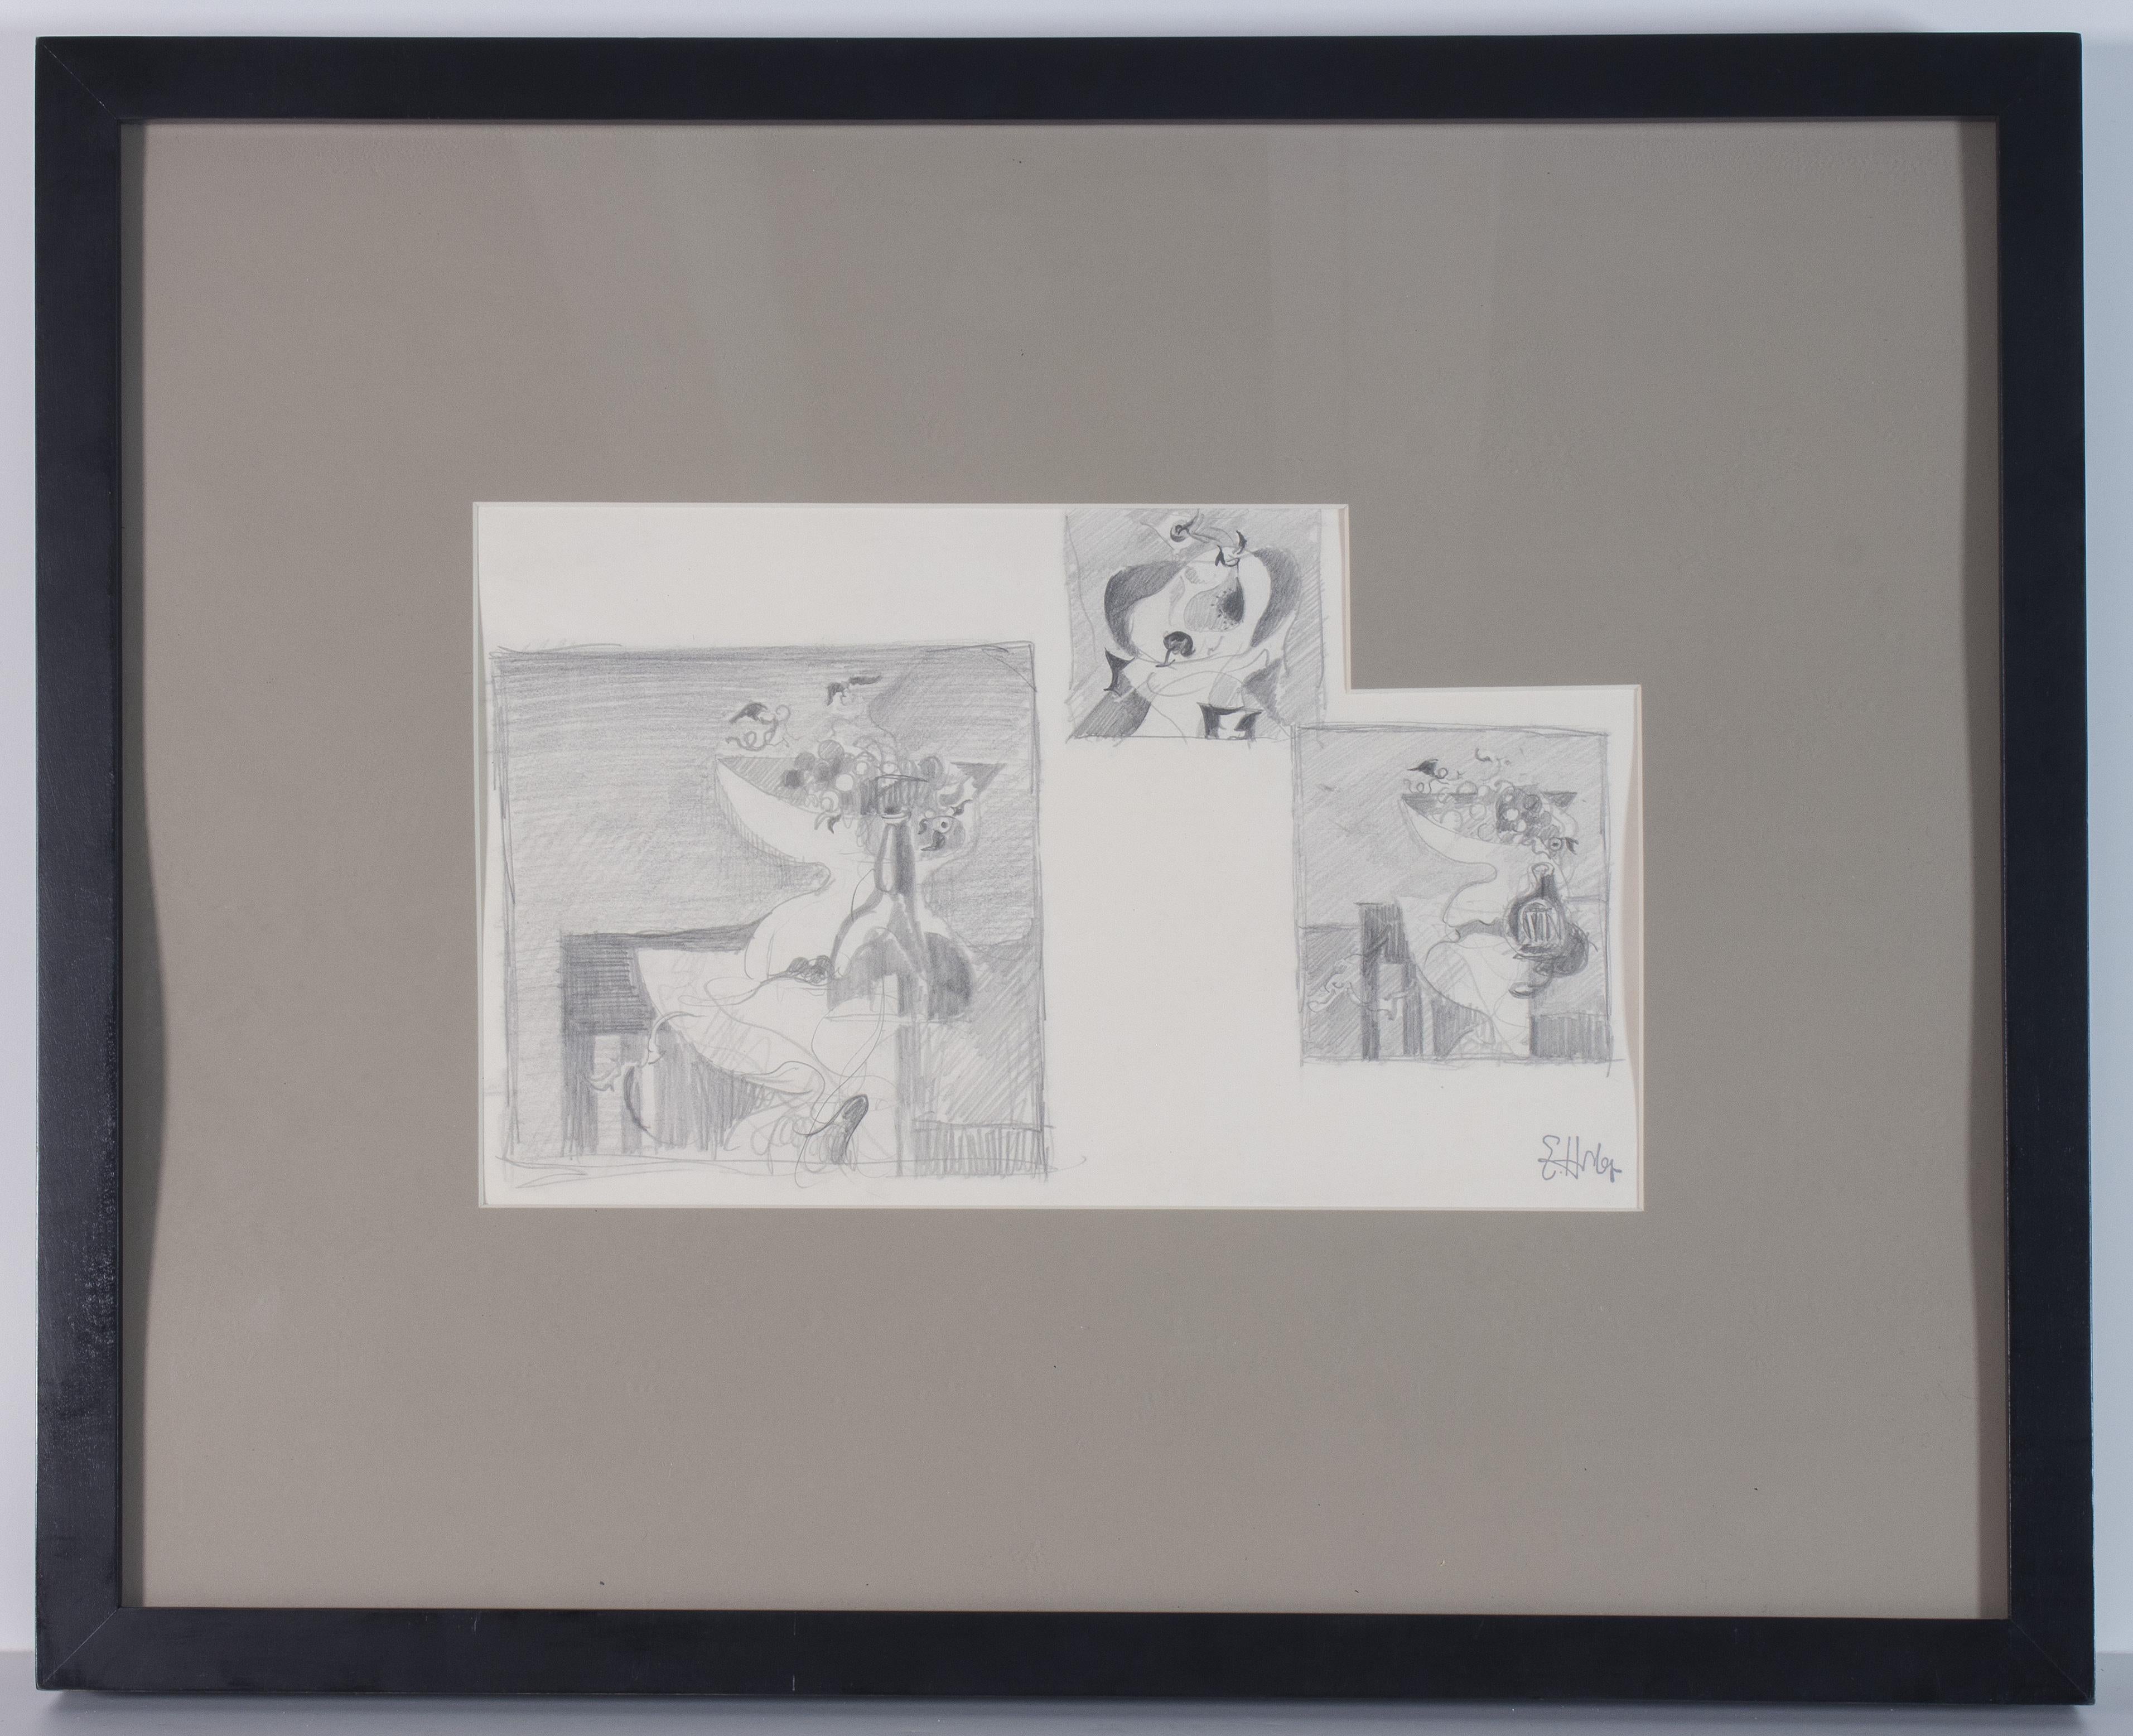 Earl Horter (américain, 1883-1940)
Trois études de natures mortes
Crayon sur papier, 7 1/4 x 13 1/2 pouces ; Encadré : 17 x 21 pouces

NOTE : bien qu'originellement montée avec des matériaux d'archives, l'œuvre n'a pas été encapsulée et le carton du